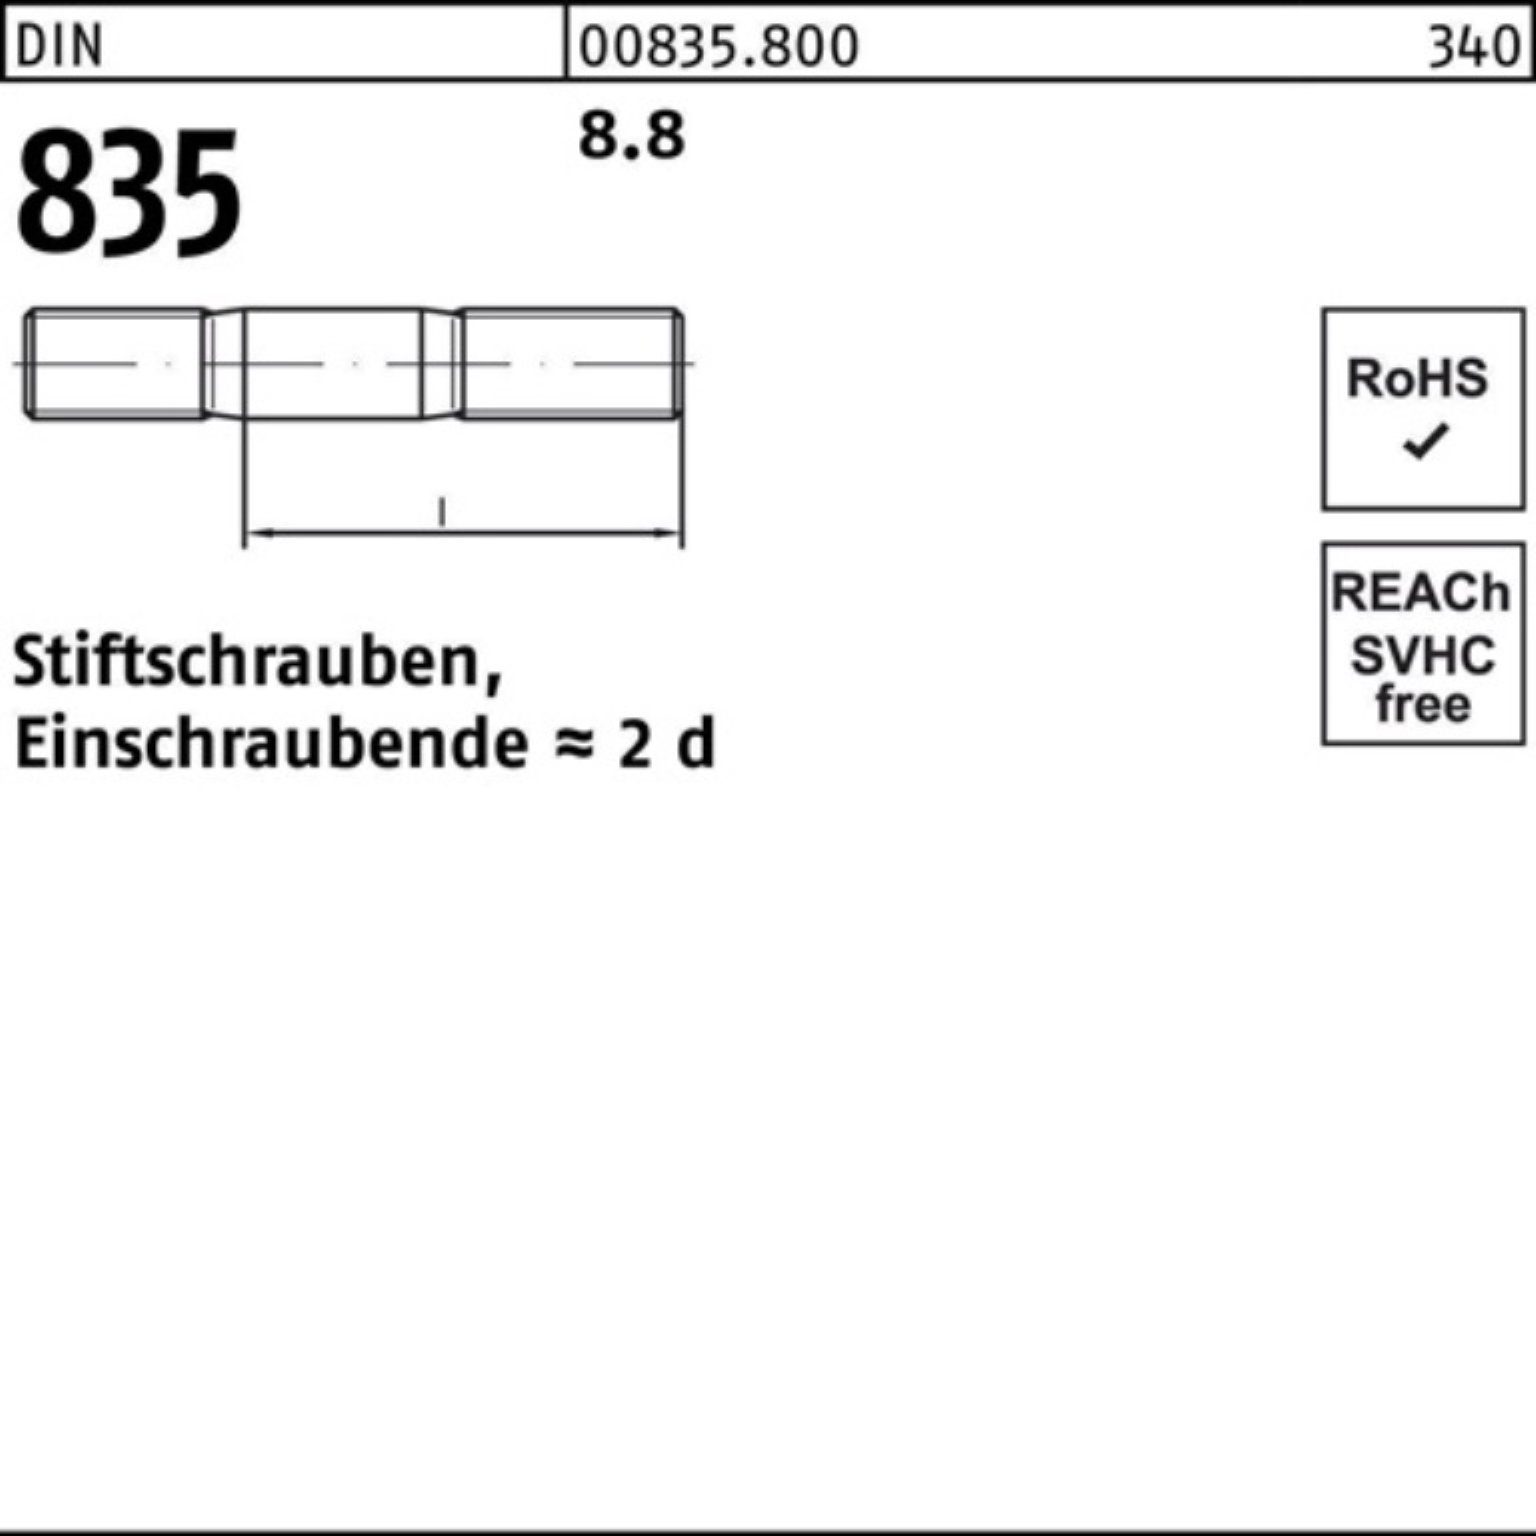 Stiftschraube Reyher DIN 100 835 8.8 16 Stü Pack Einschraubende=2d M8x Stiftschraube 100er